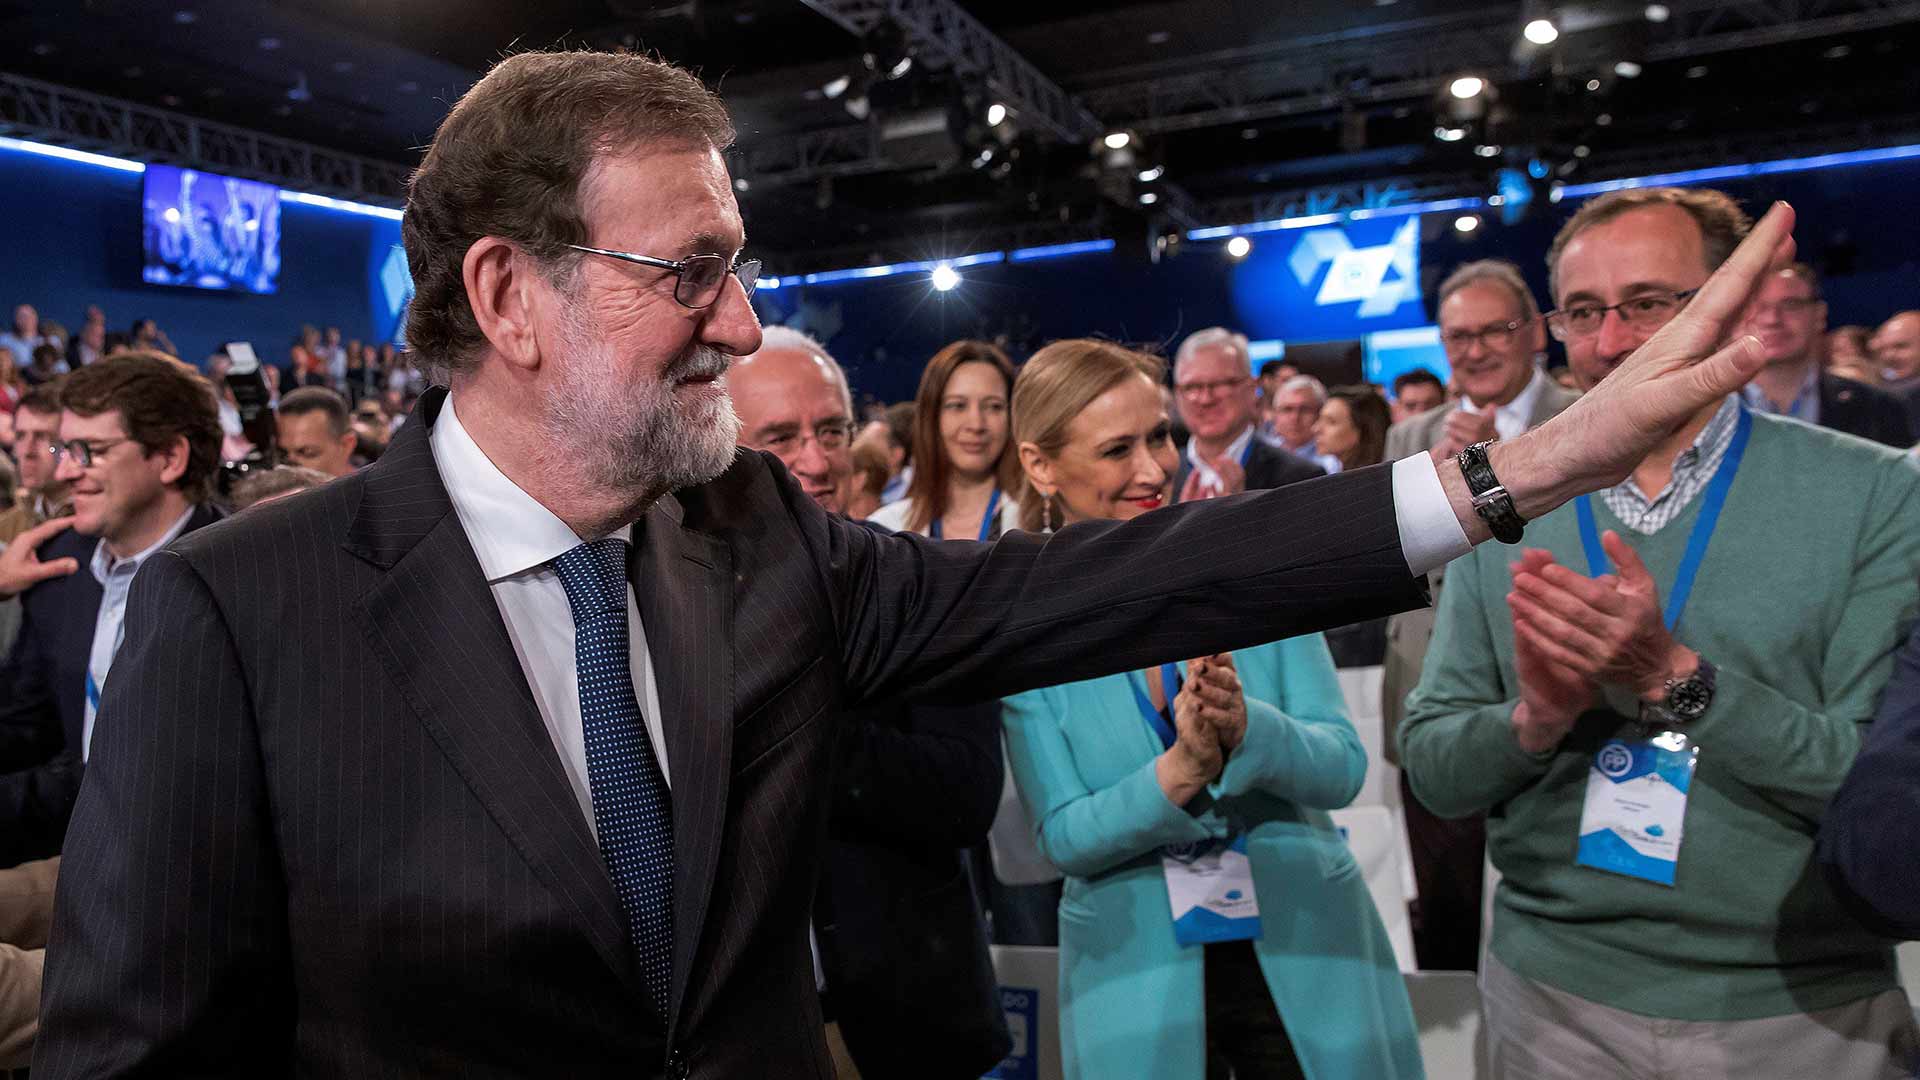 Rajoy arremete contra Ciudadanos acusándoles de "inexpertos lenguaraces" que no gobiernan y no tienen "ni idea de España"